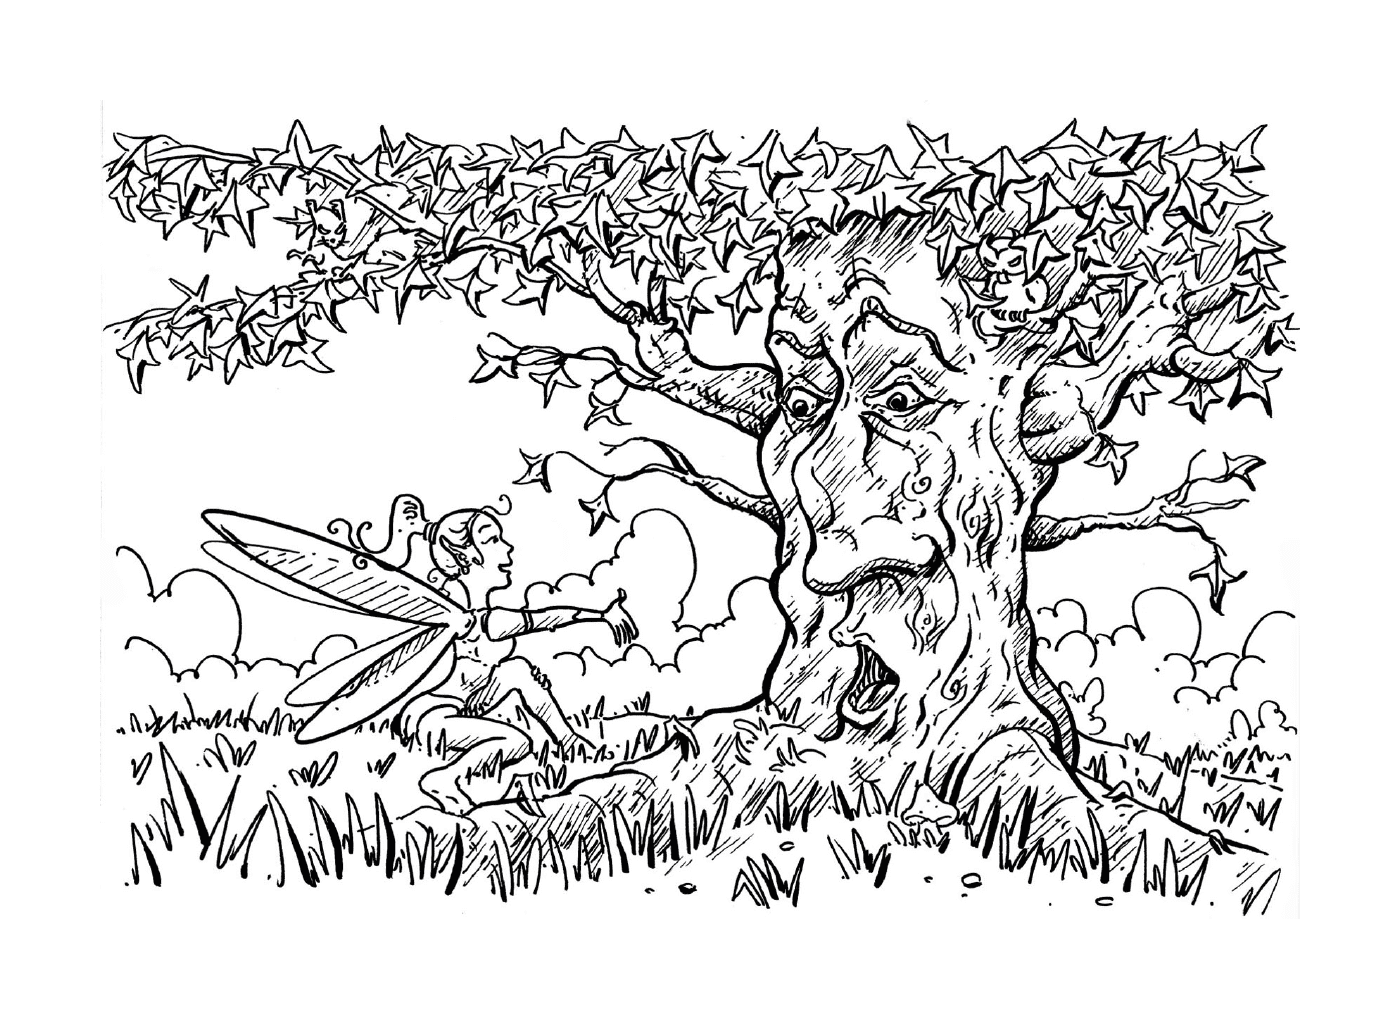  Uma tinta, um homem e uma árvore 